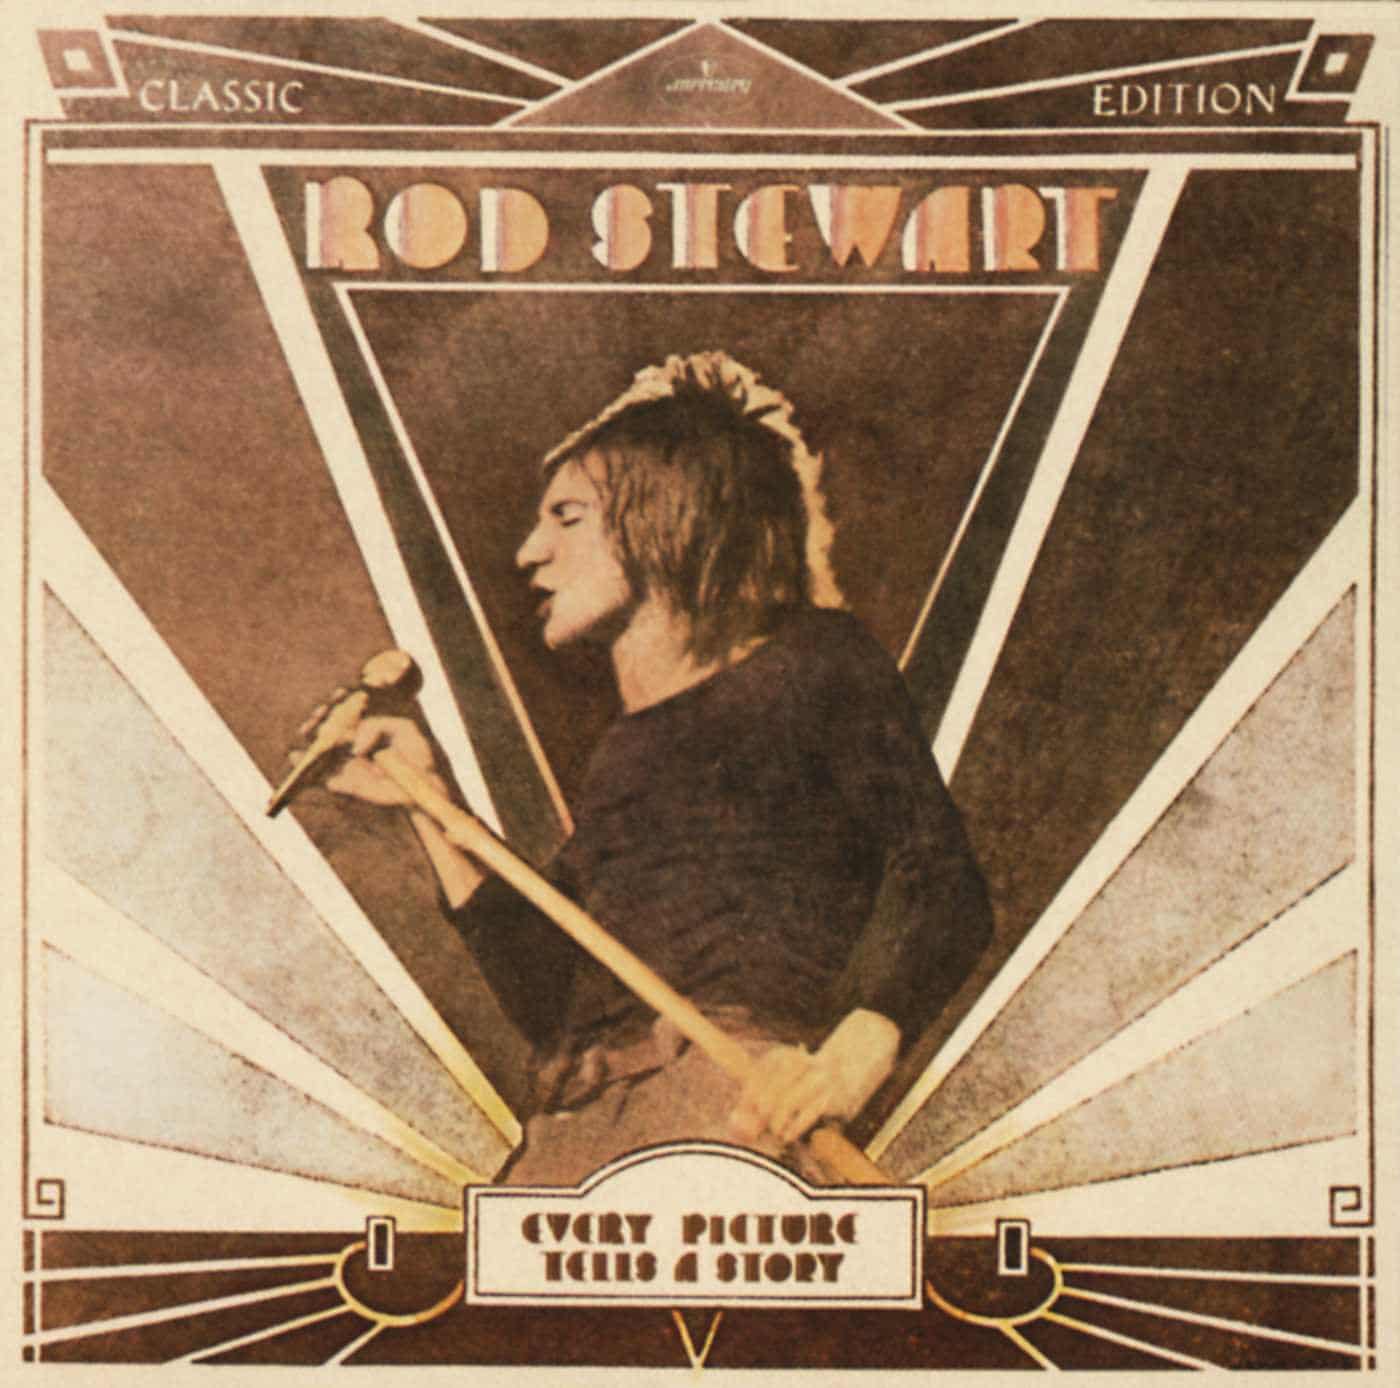 Rod Stewart, “Mandolin Wind”